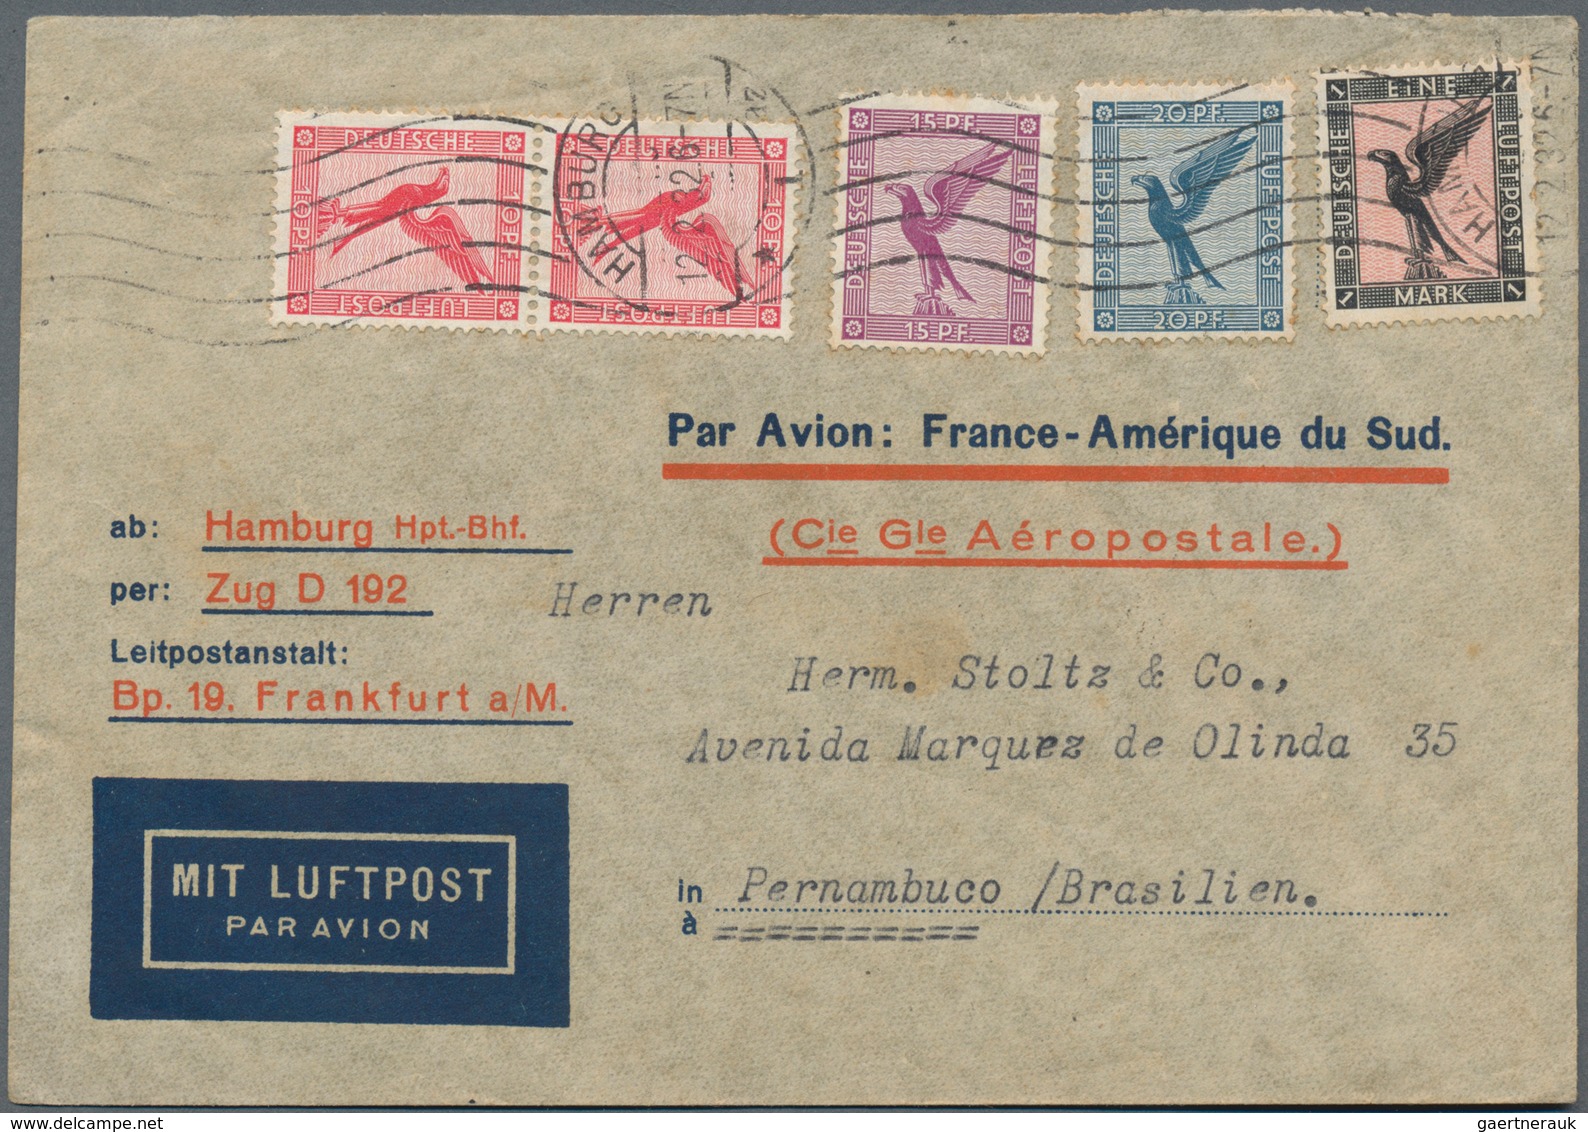 Deutsches Reich - 3. Reich: 1933/1945, einige wenige davor: vielseitiger Posten von über 1.300 Brief